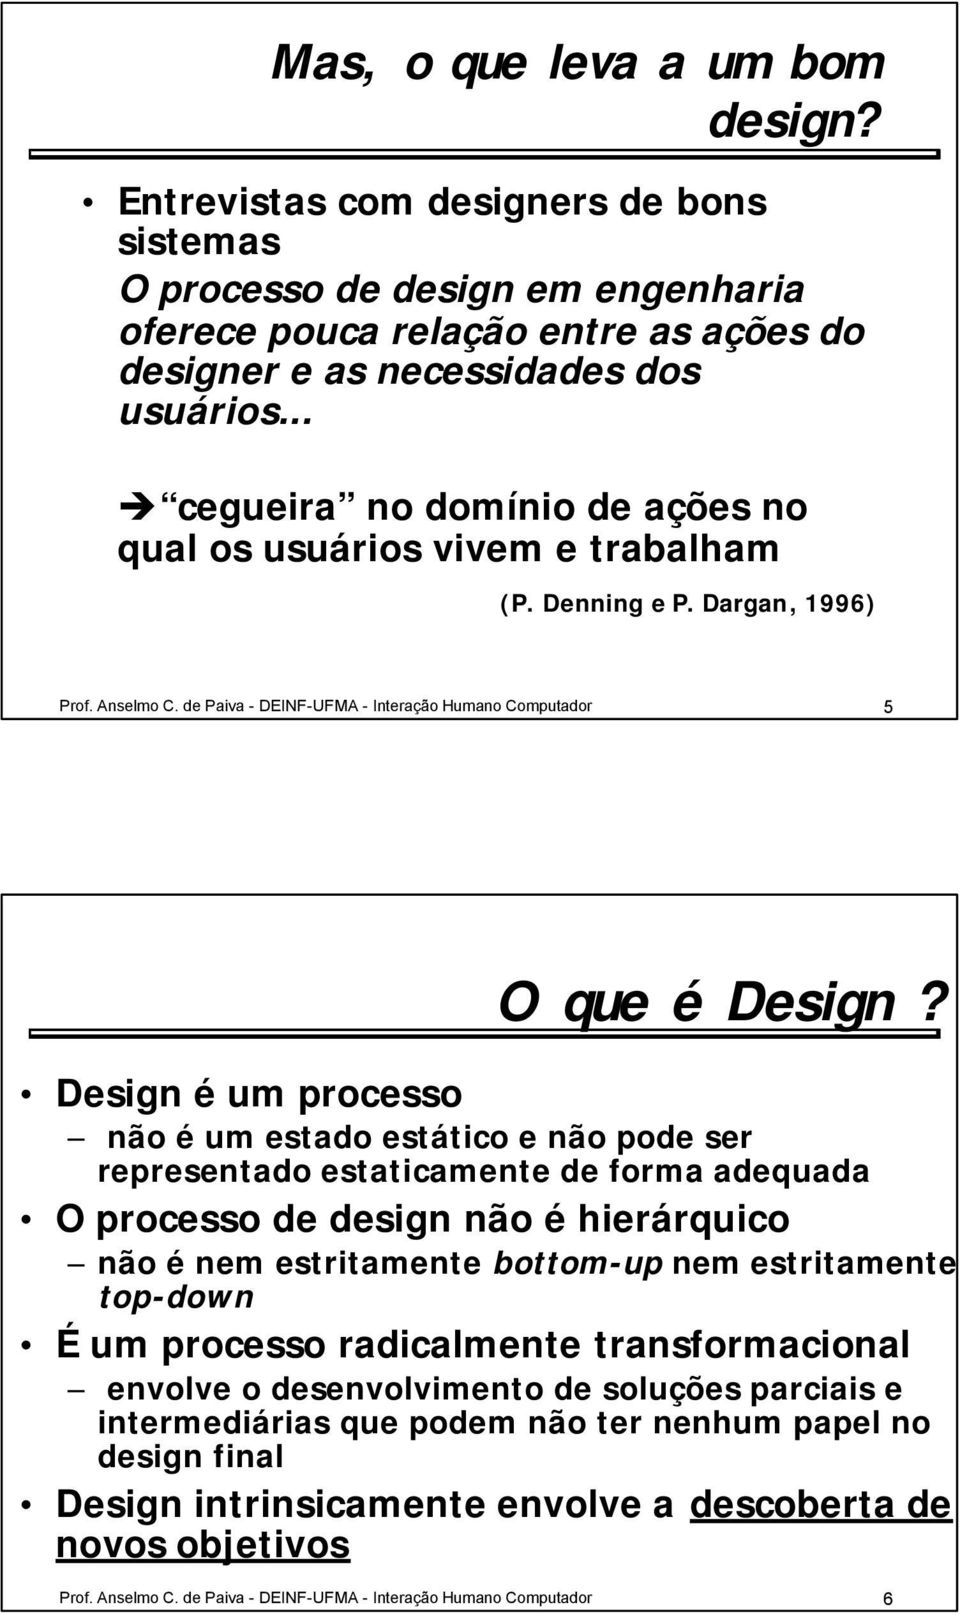 Design é um processo não é um estado estático e não pode ser representado estaticamente de forma adequada O processo de design não é hierárquico não é nem estritamente bottom-up nem estritamente